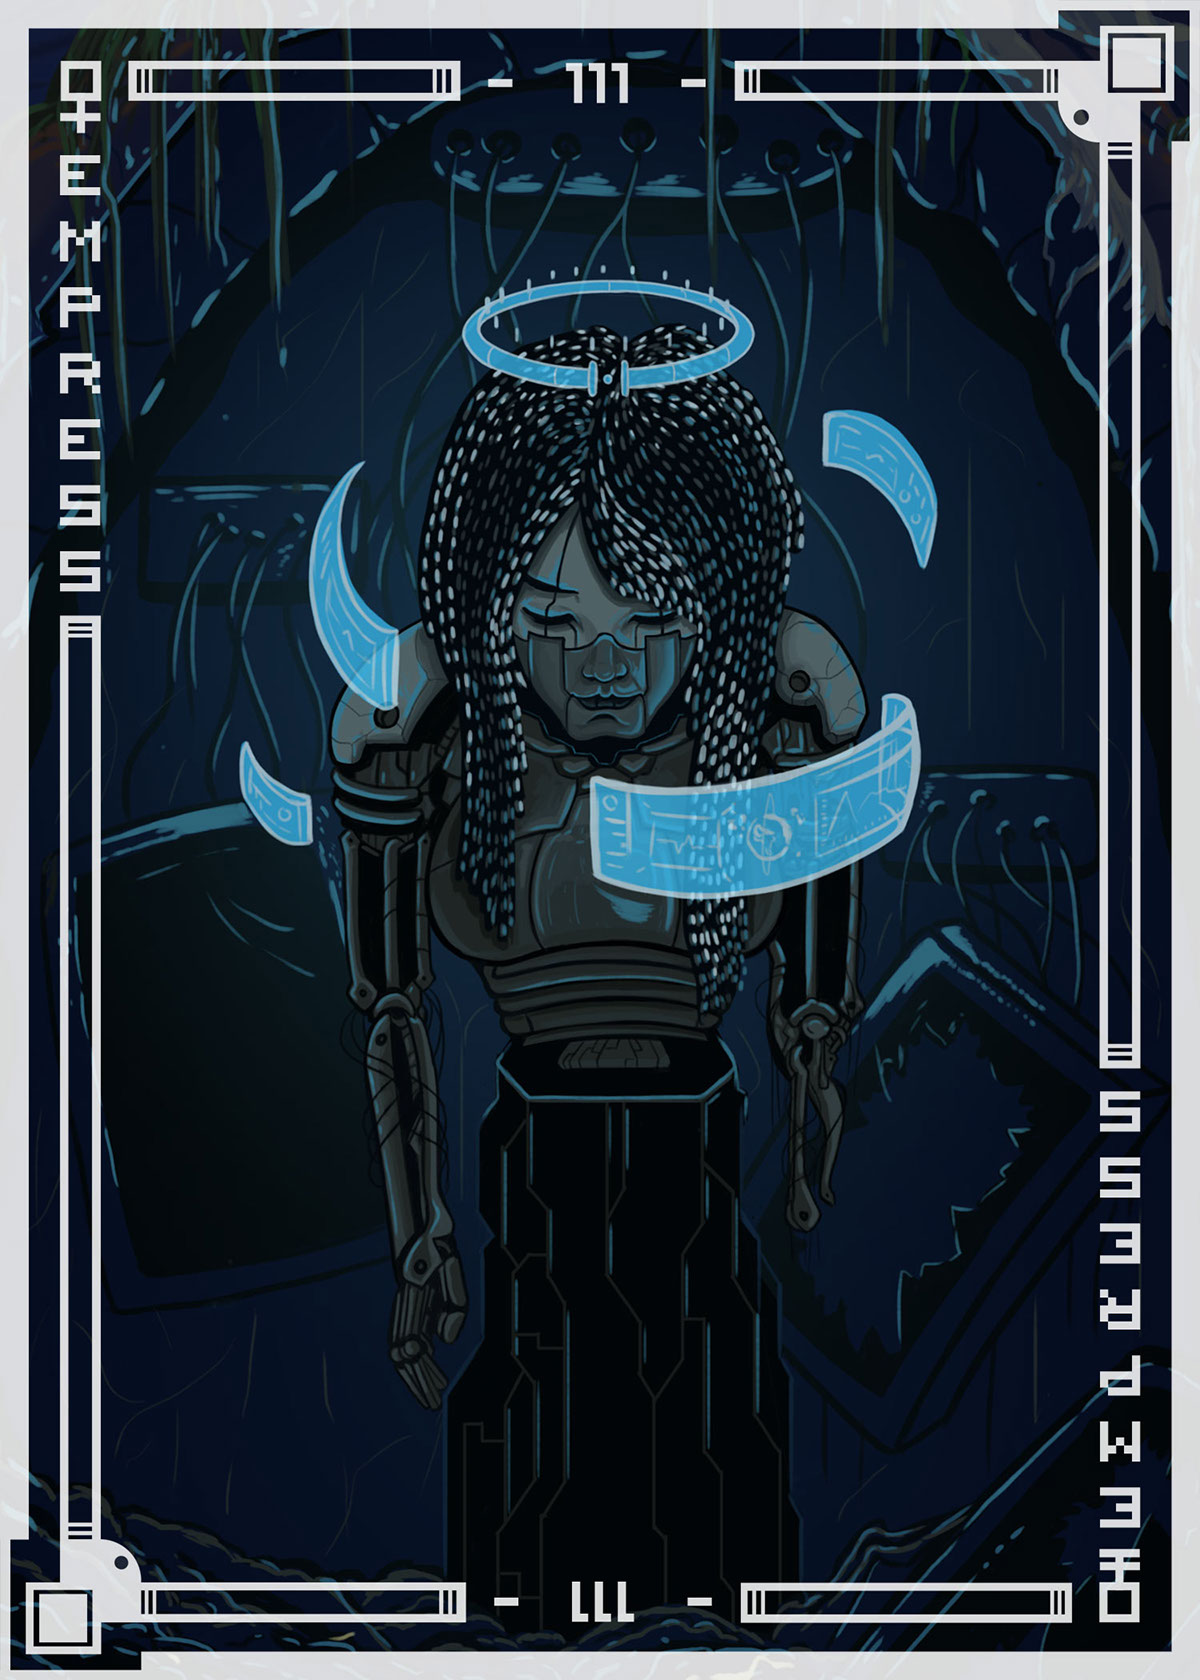 tarot empress photoshop Illustrator card cards tarotcards somber lighting asleep android androidgirl robot robotgirl Halo